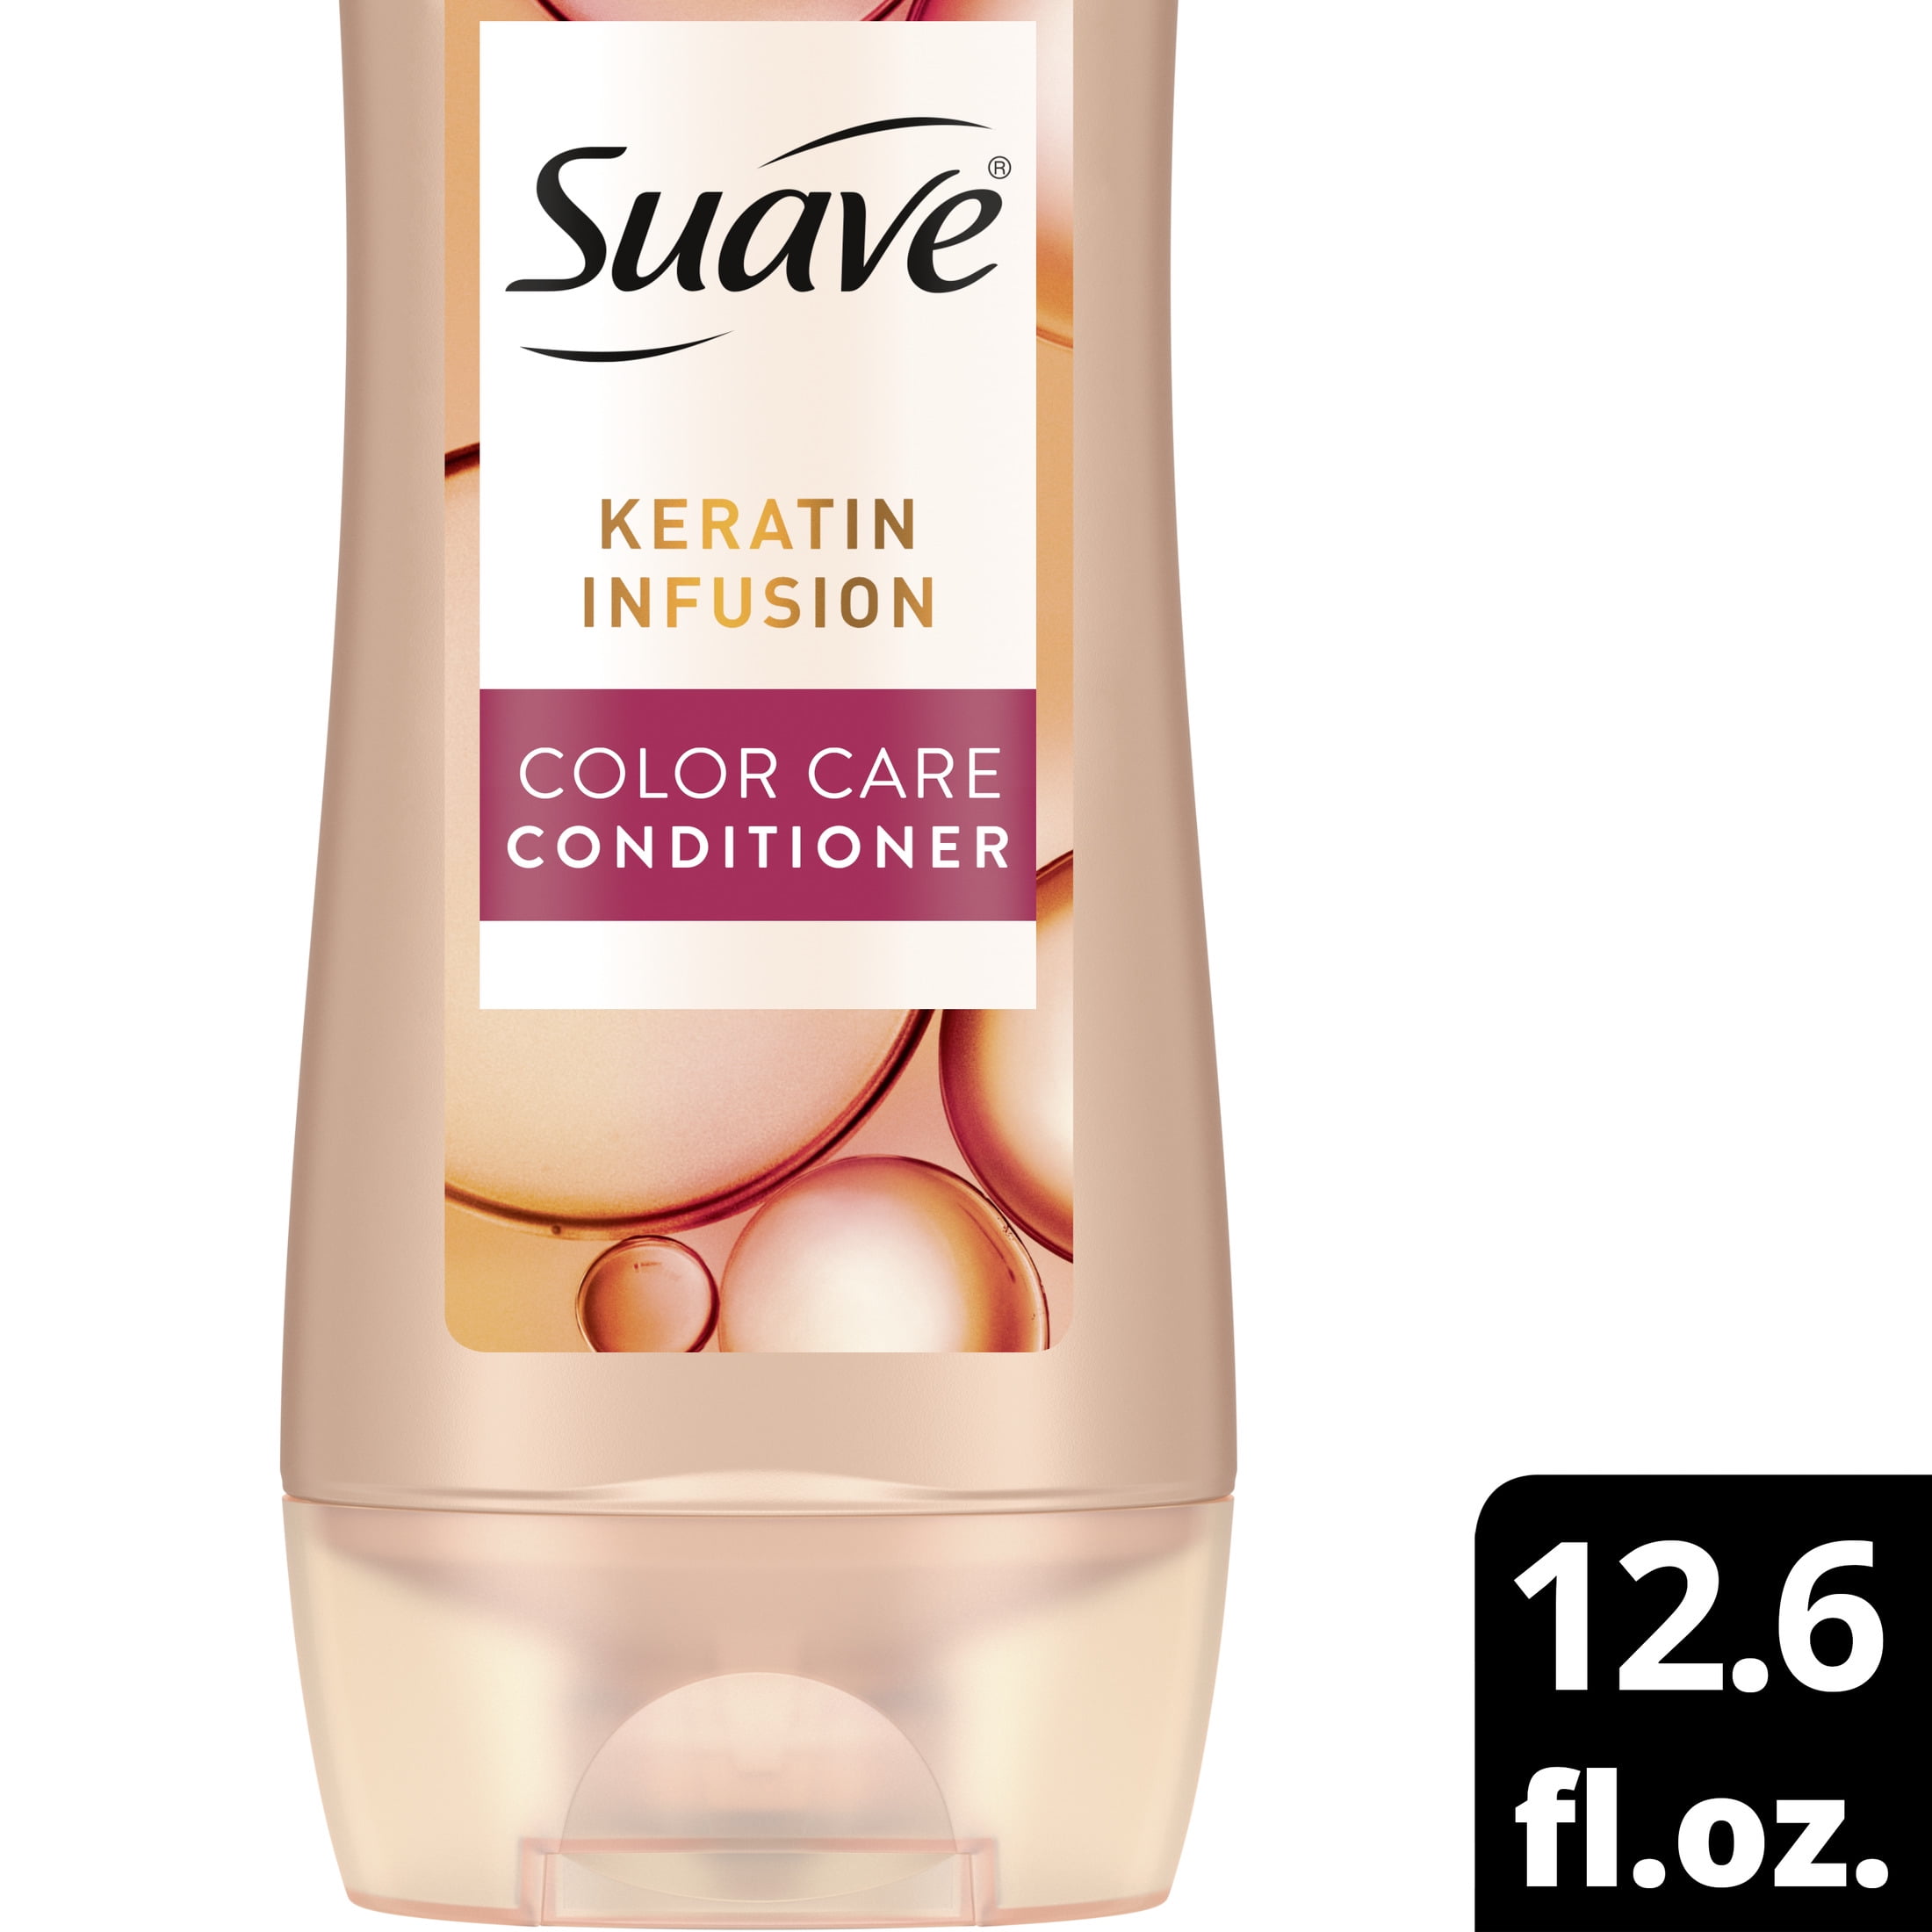 Suave Keratin Infusion Color Care Conditioner 12.6 fl oz